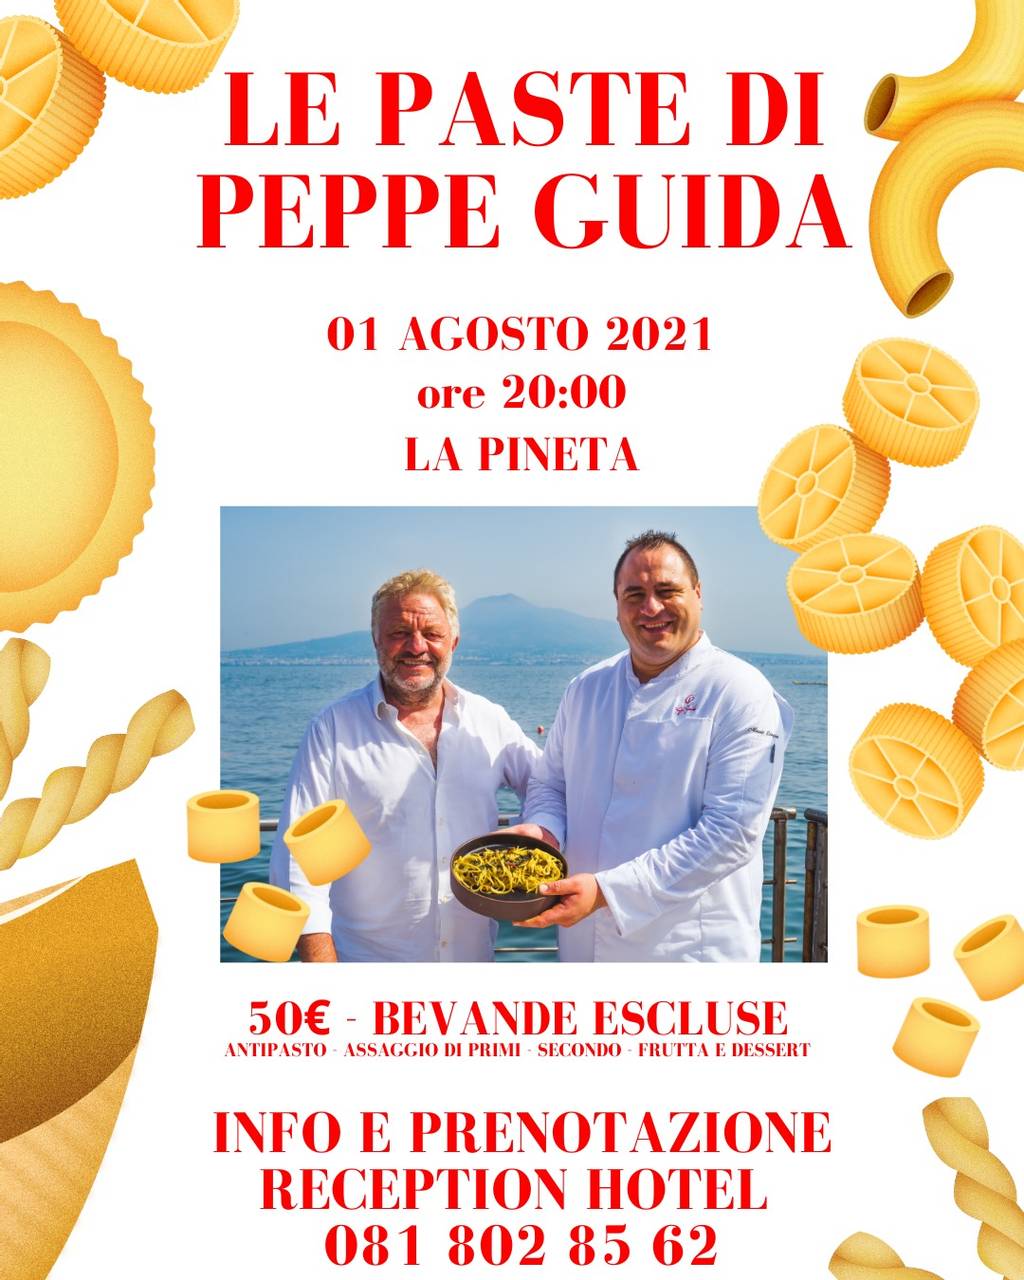 Peppe Guida's pasta